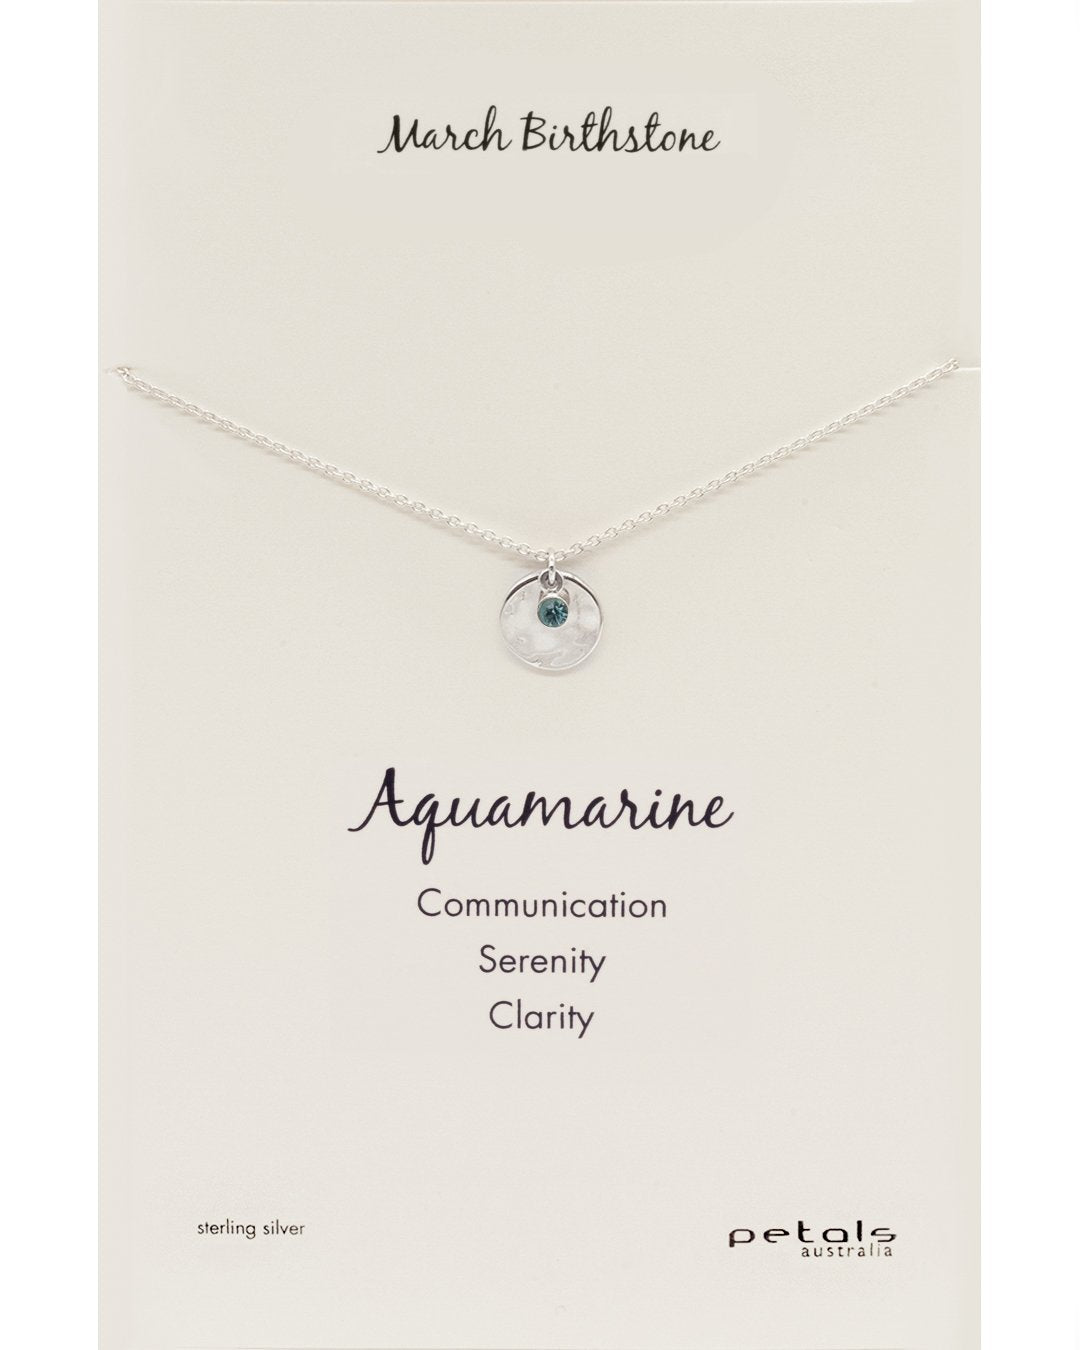 March Aquamarine Necklace